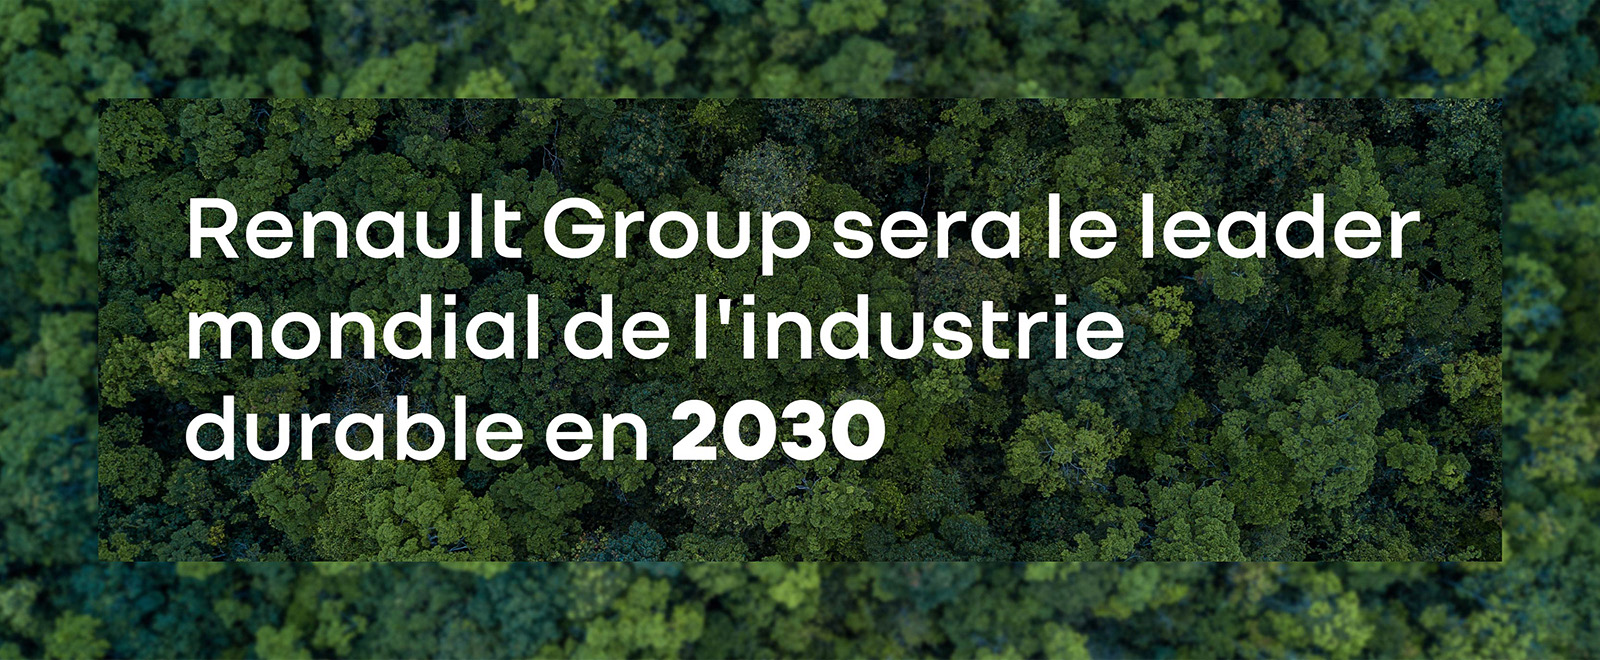 Décarbonation industrielle : Renault Group dans le peloton de tête